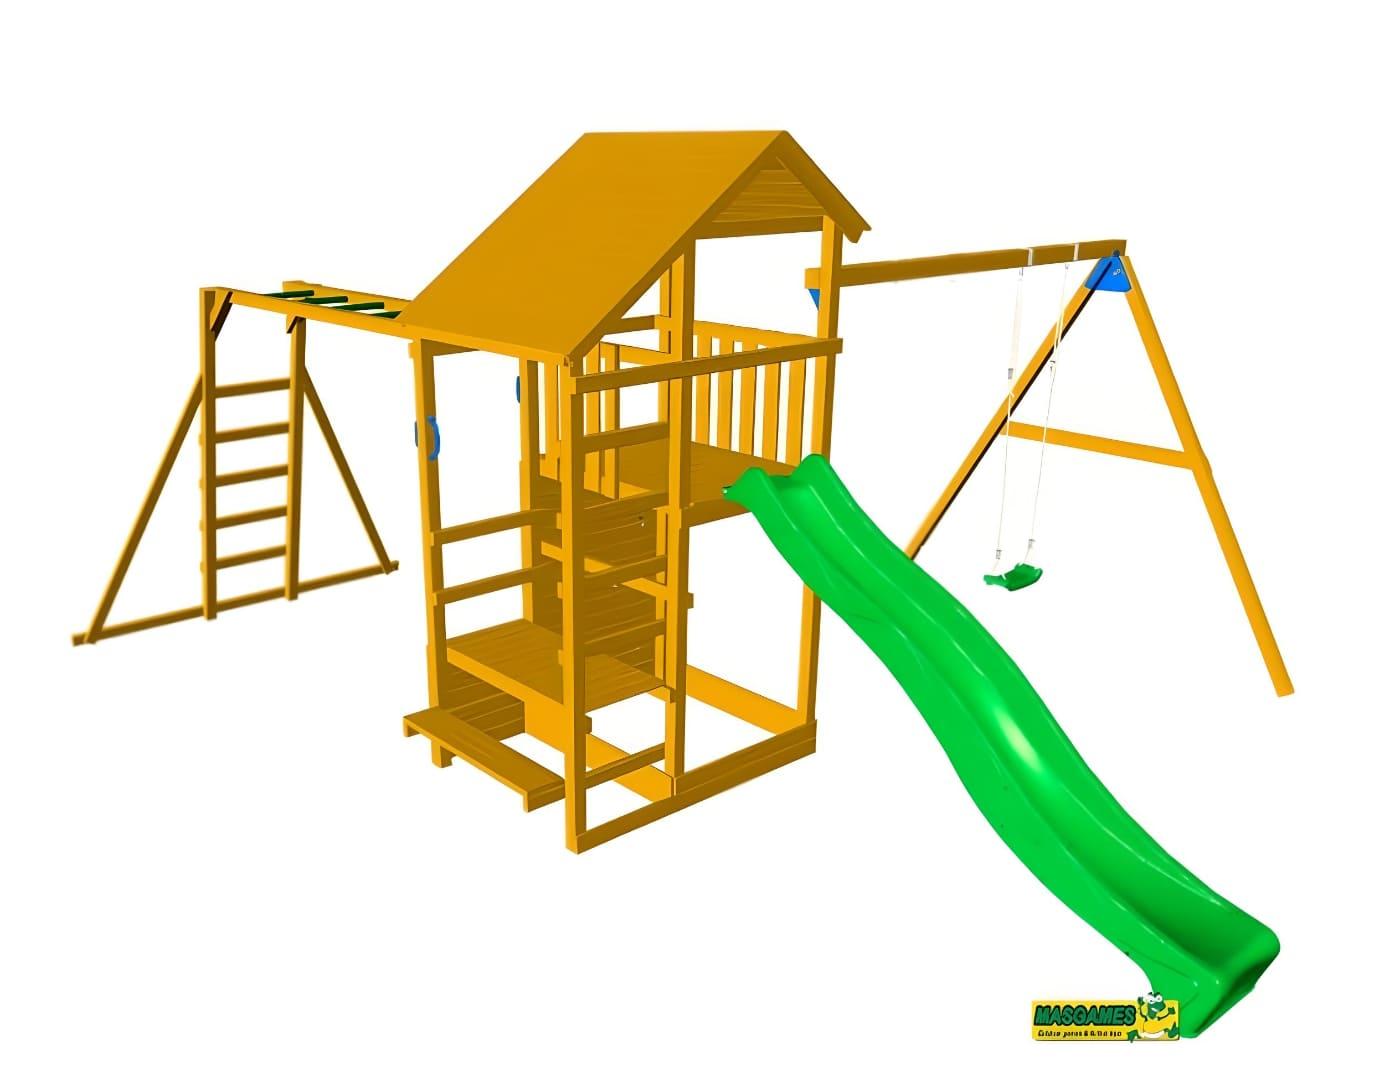 Parque infantis Masgames Teide com balanço duplo e escada mono 